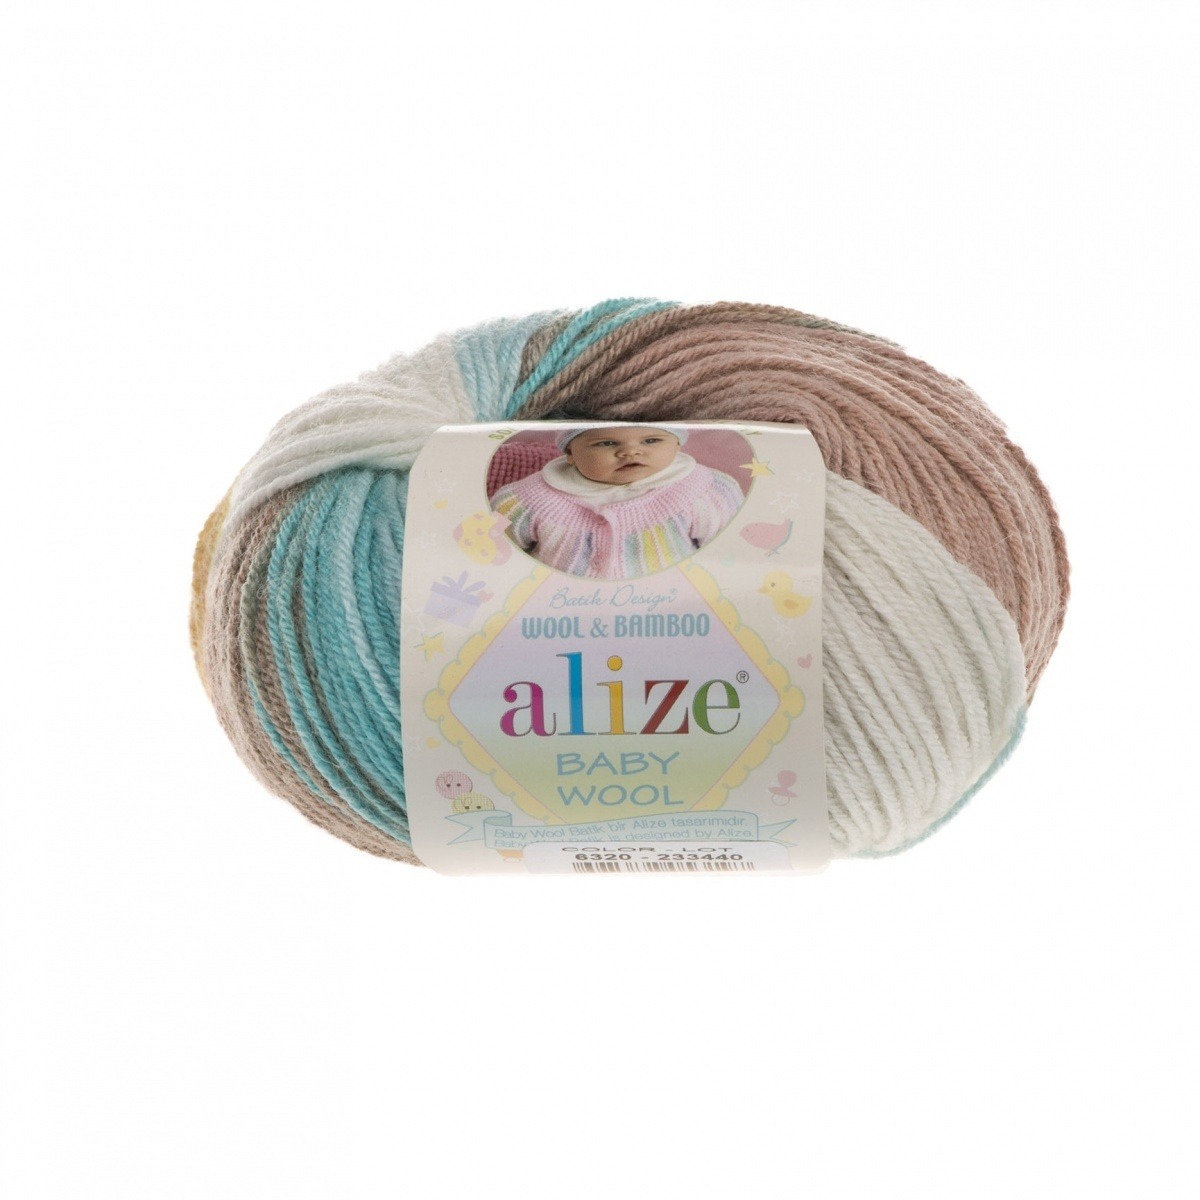 Alize "Baby wool batik" (6320)